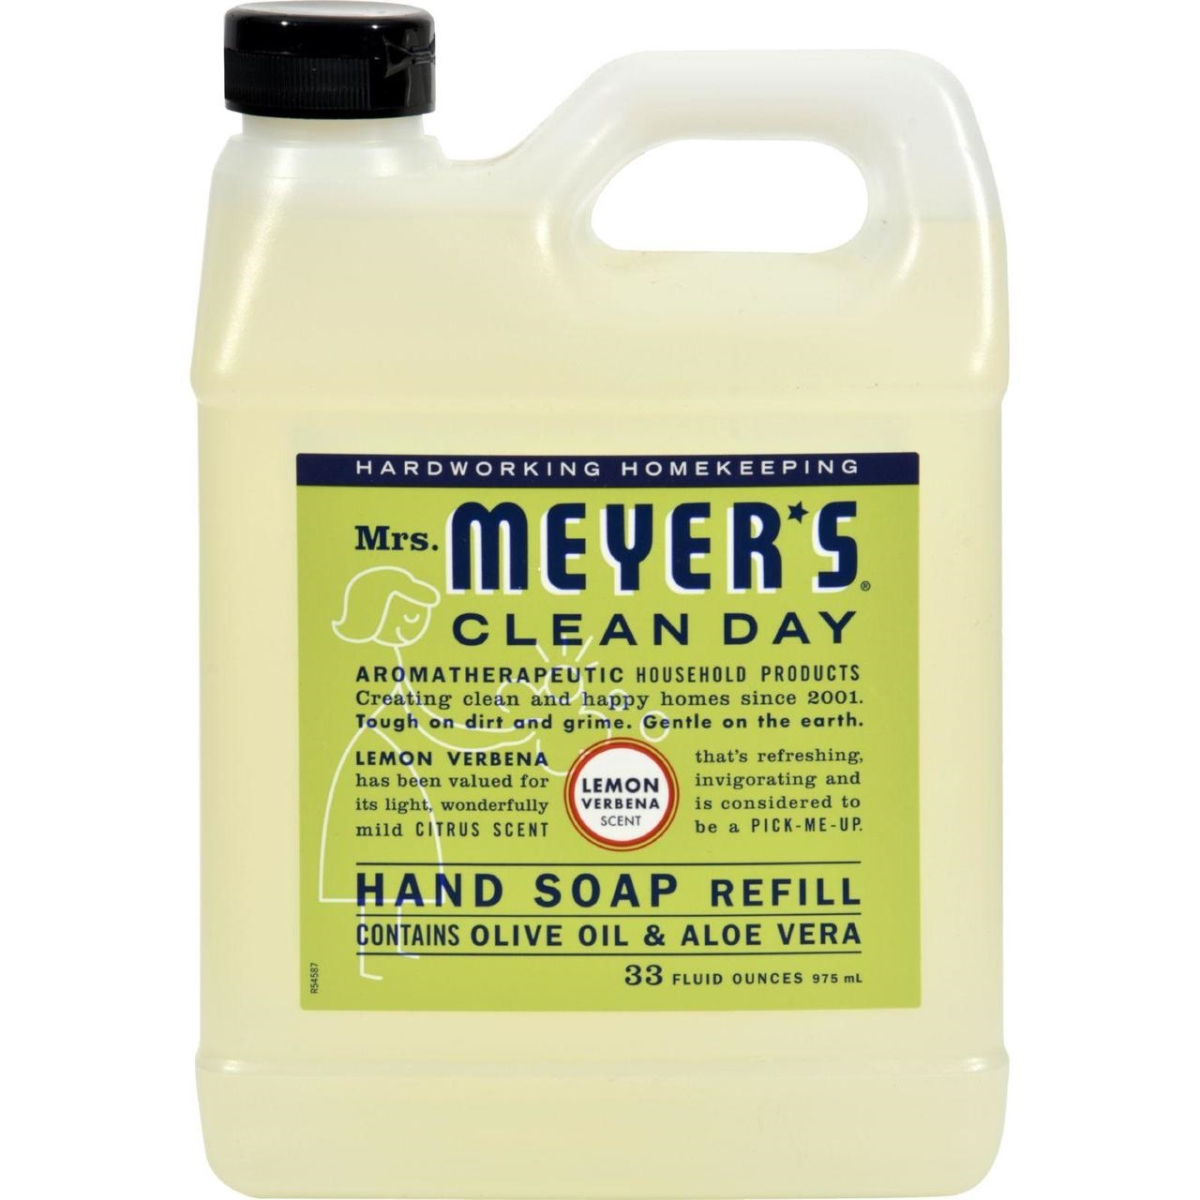 Hg1205350 33 Fl Oz Liquid Hand Soap Refill, Lemon Verbena - Case Of 6